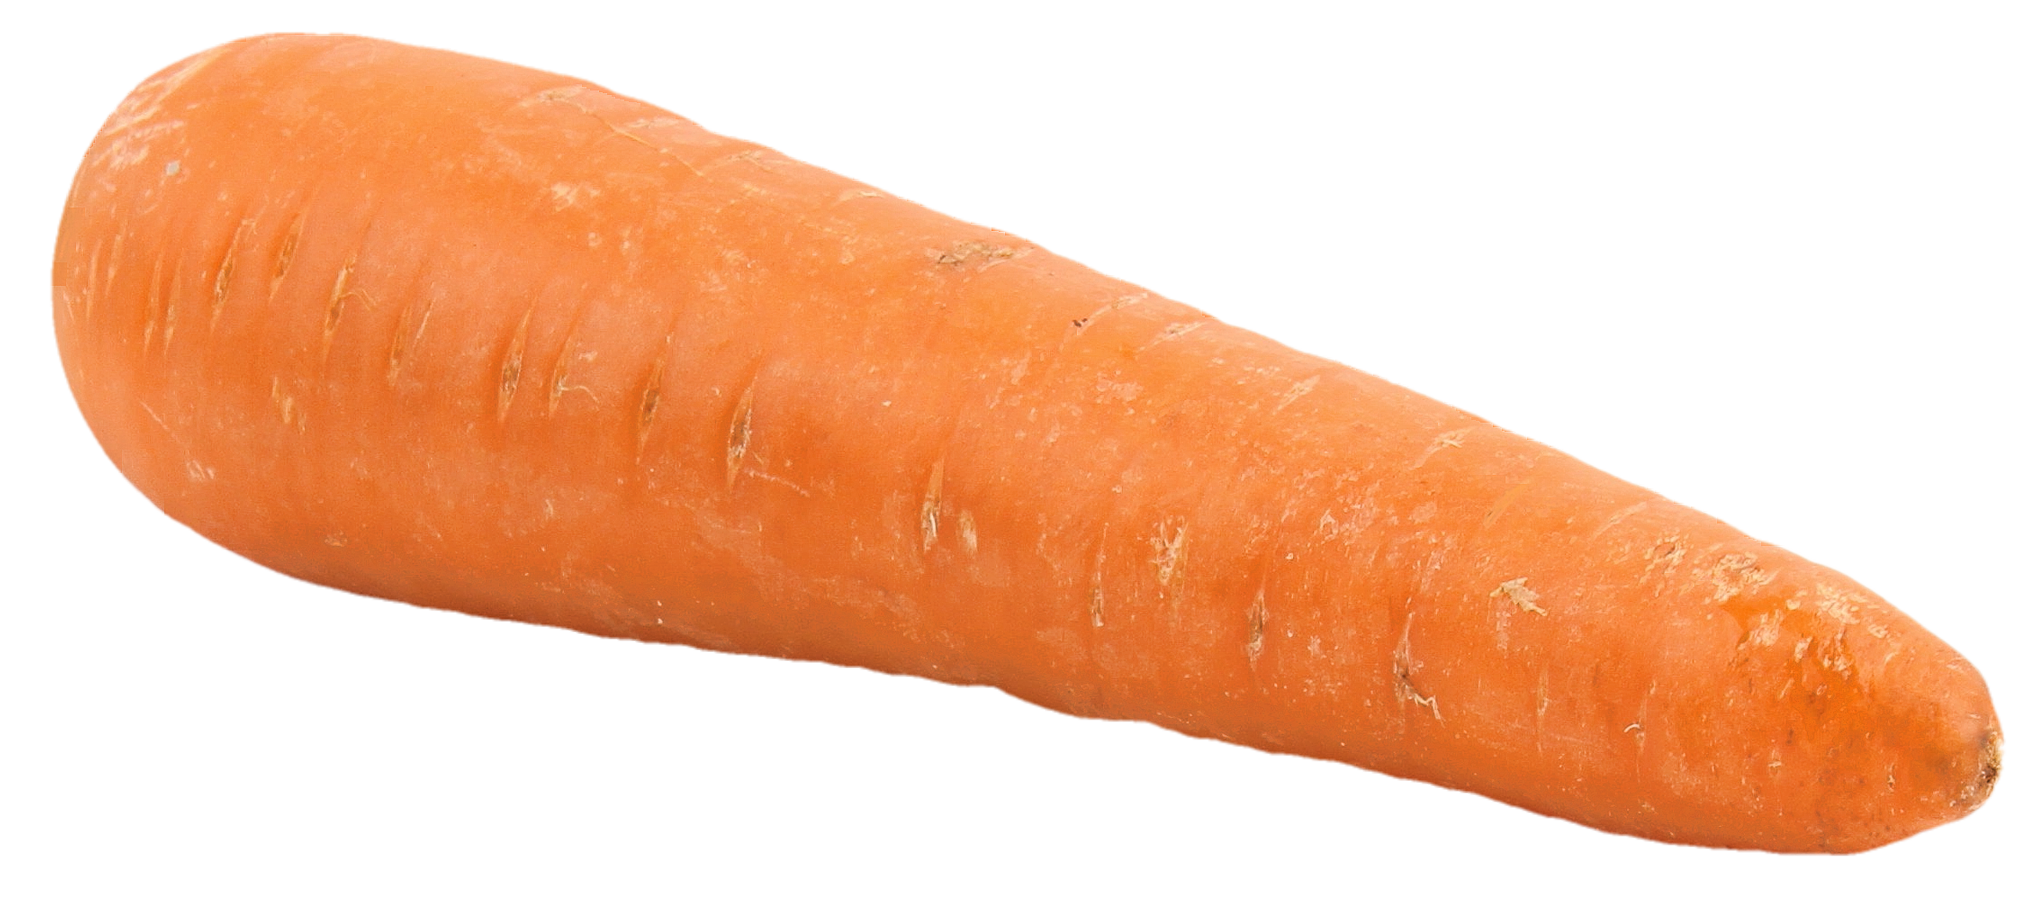 big carrot png image pngpix #17603